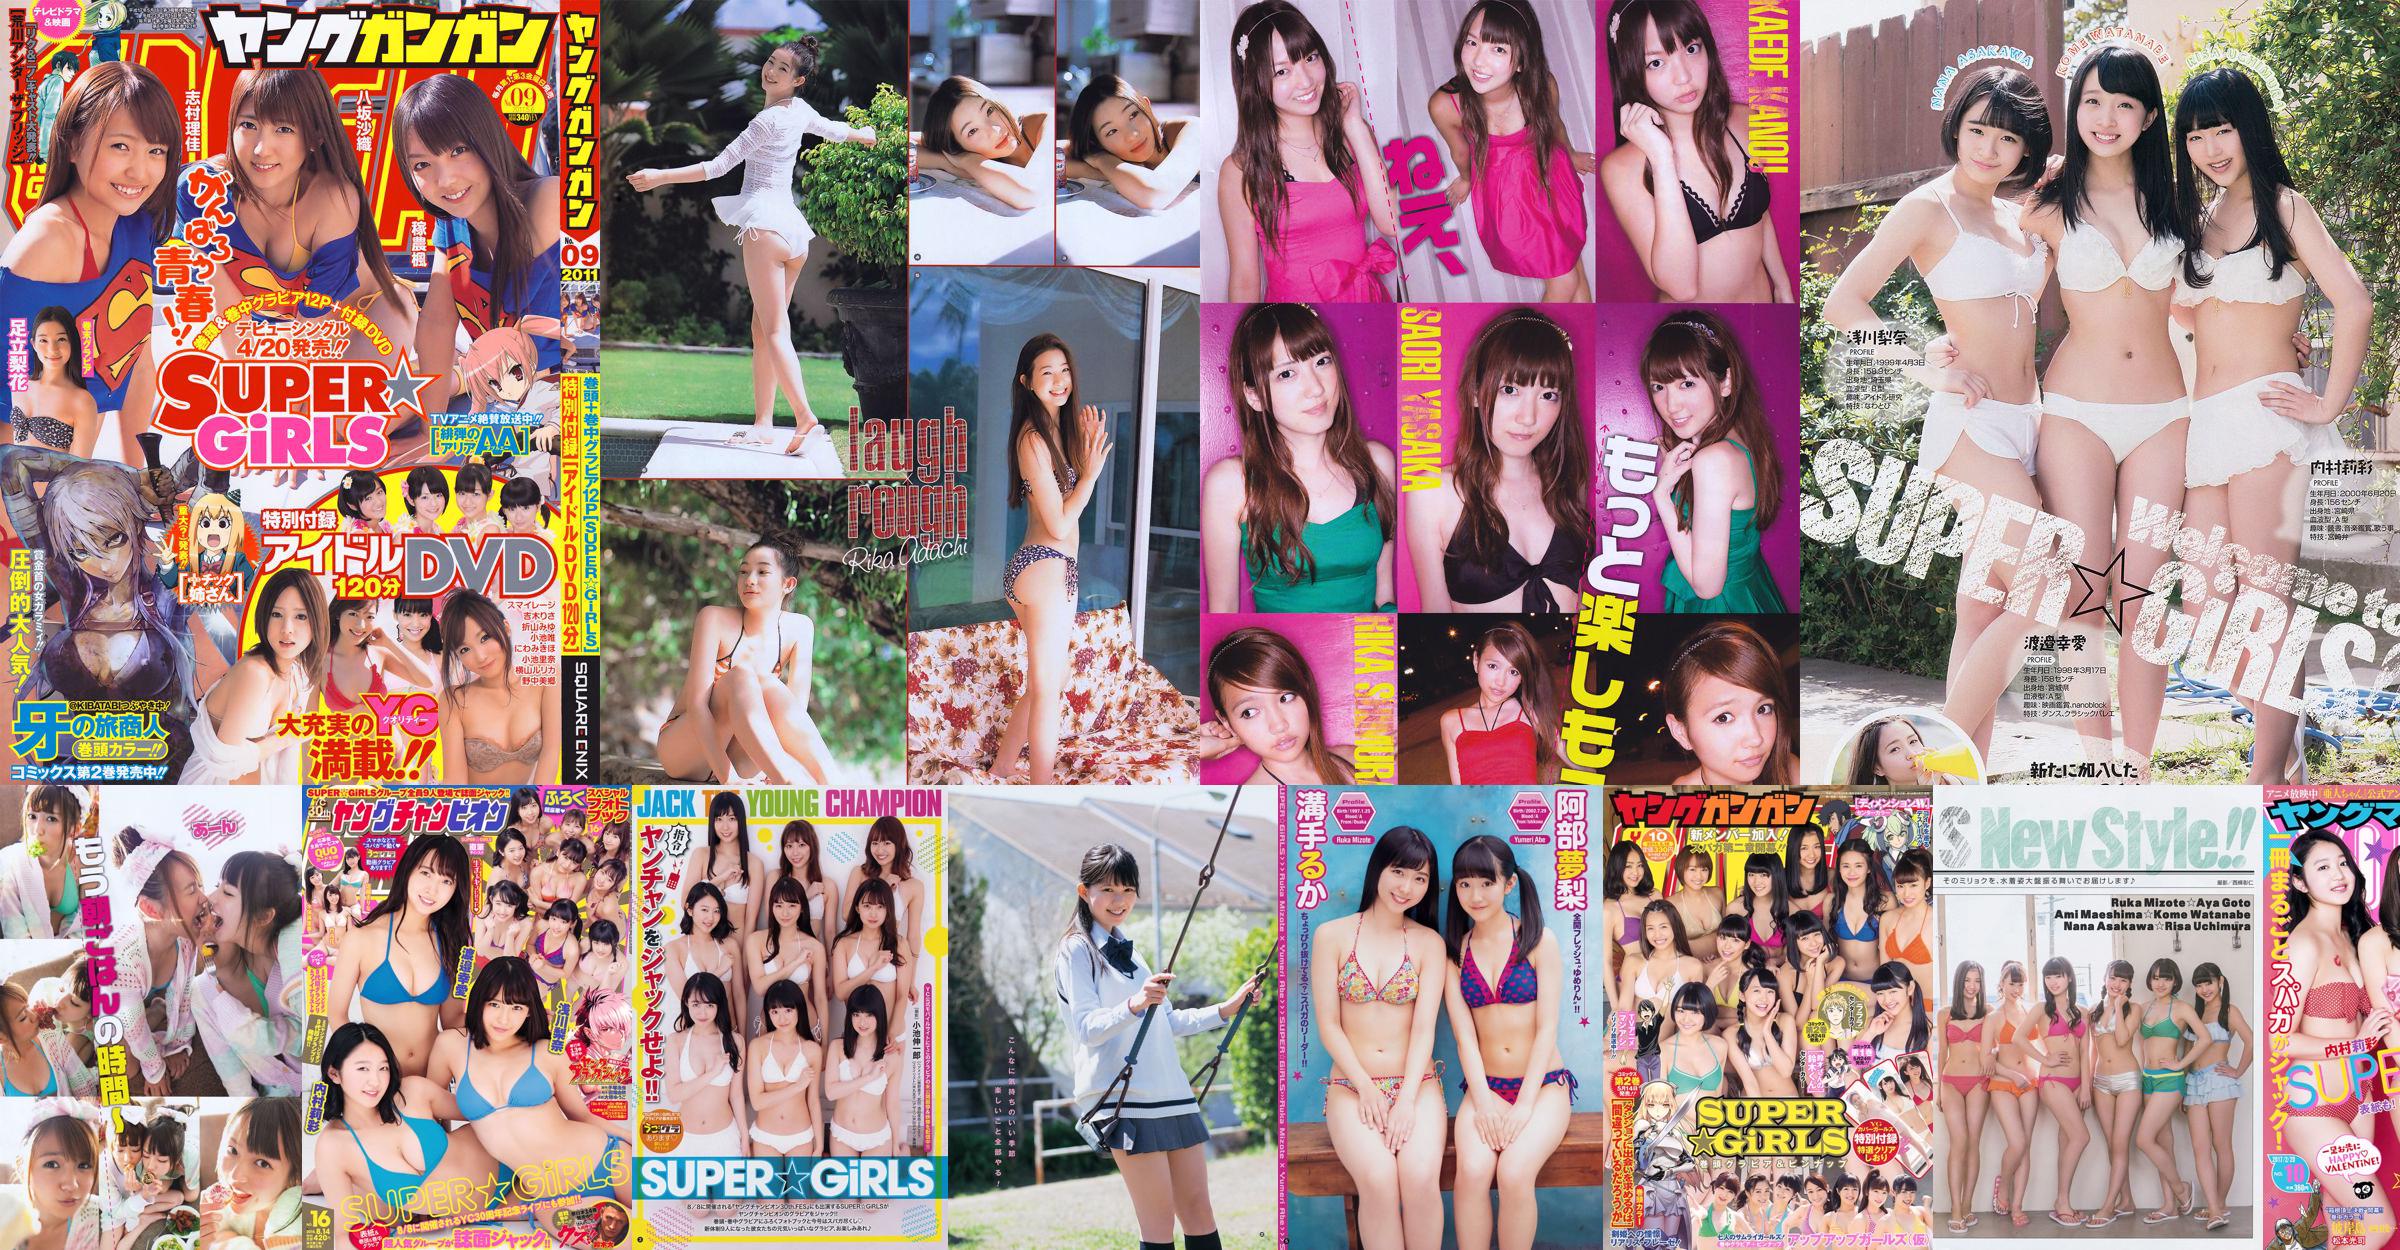 [Young Gangan] SUPER ☆ GiRLS Up Up Girls (Kakko) Ami Yokoyama 2014 No.10 Foto No.a29aab Pagina 1